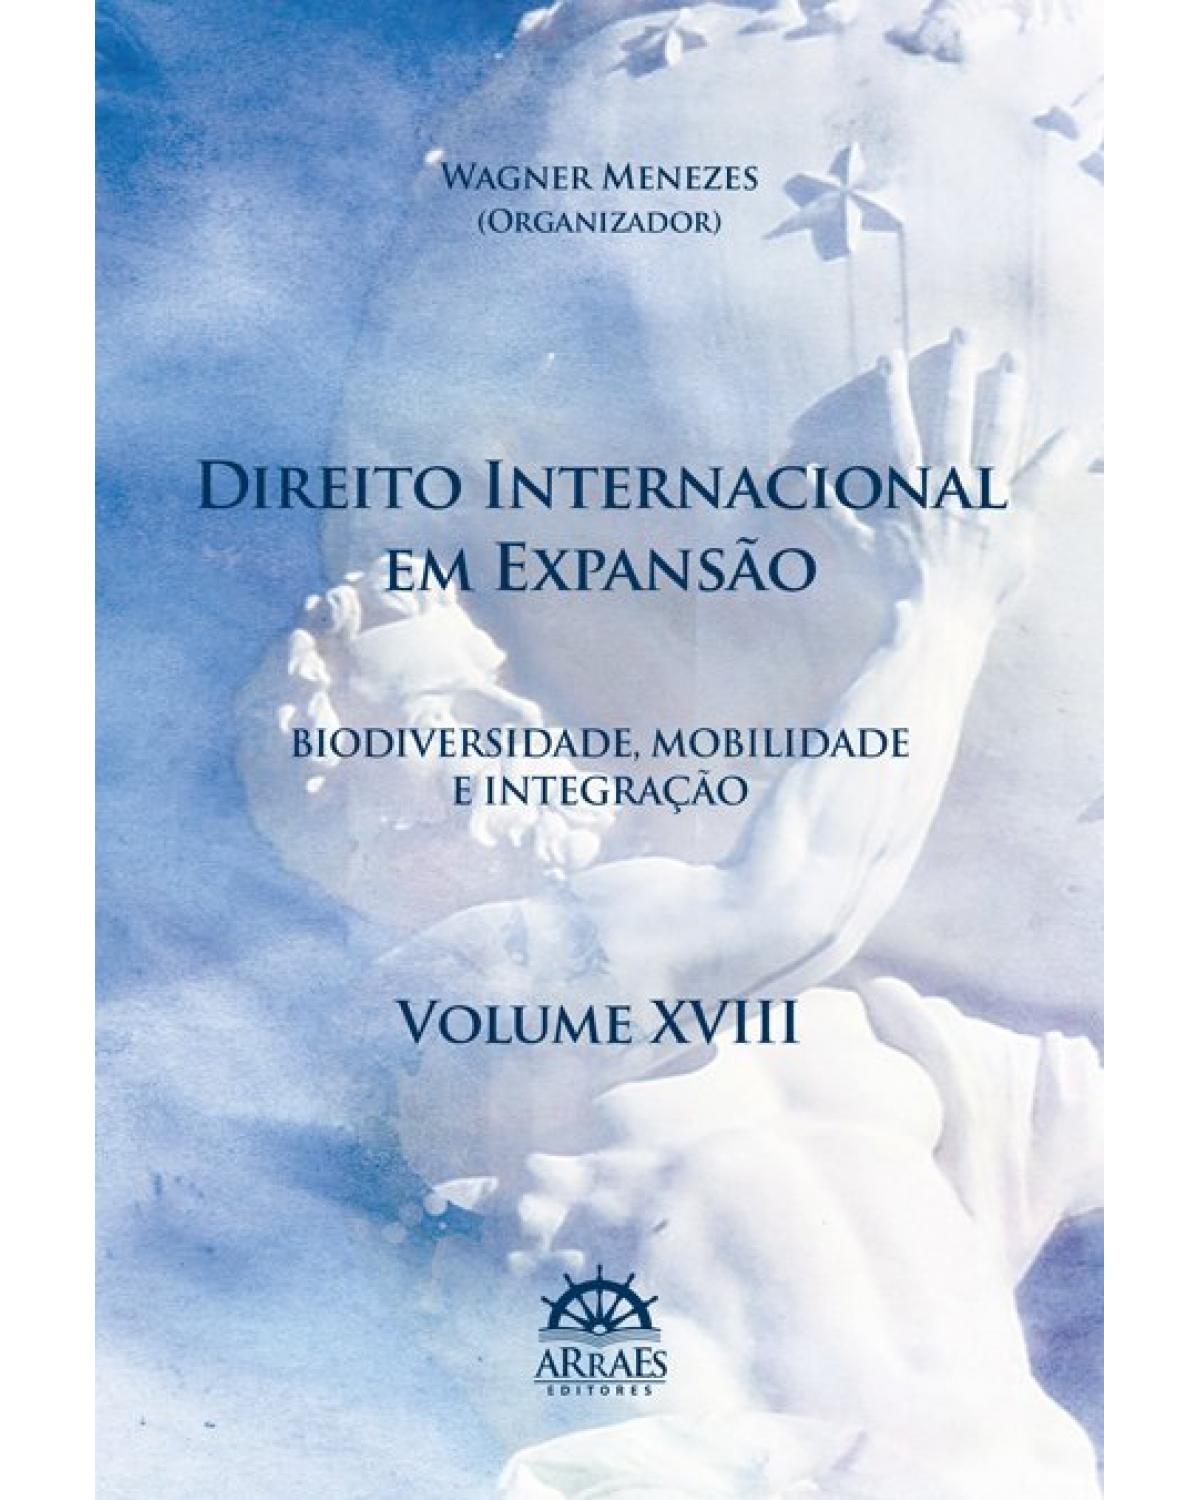 Direito internacional em expansão - Biodiversidade, mobilidade e integração - Volume XVIII | 2020